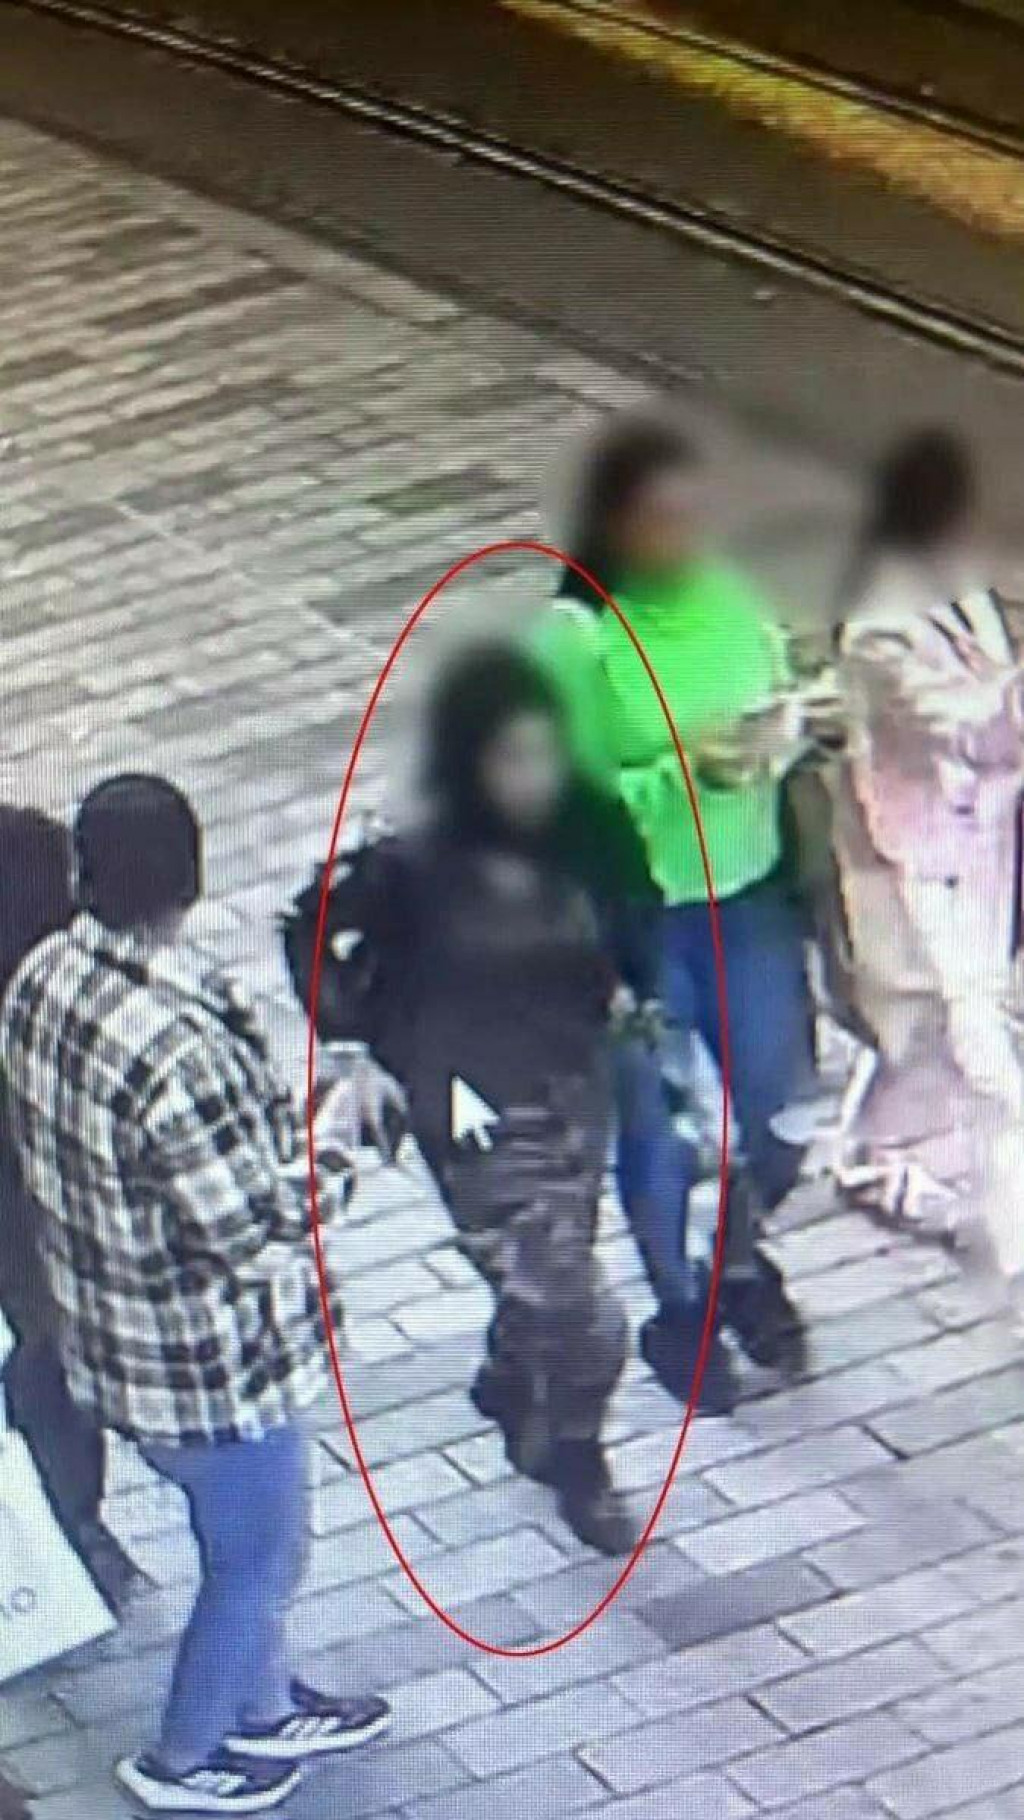 &lt;p&gt;Teroristički napad u Istanbulu izvršila žena&lt;/p&gt;
